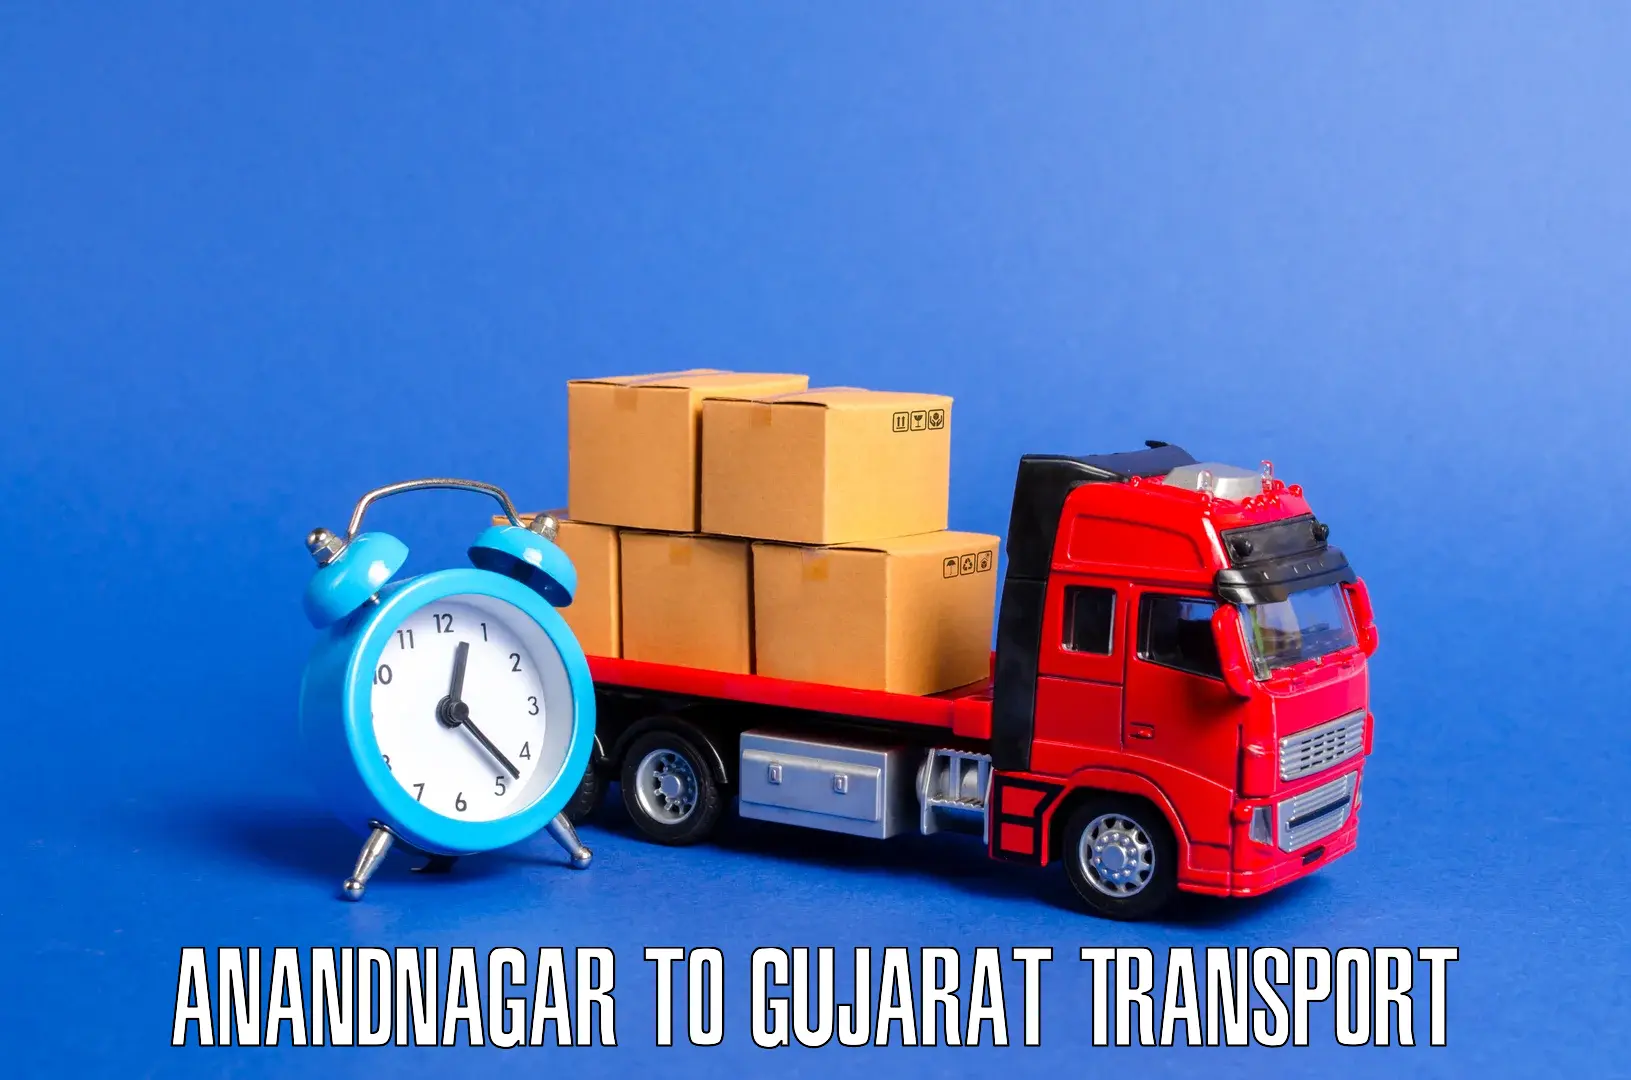 Pick up transport service Anandnagar to Halvad